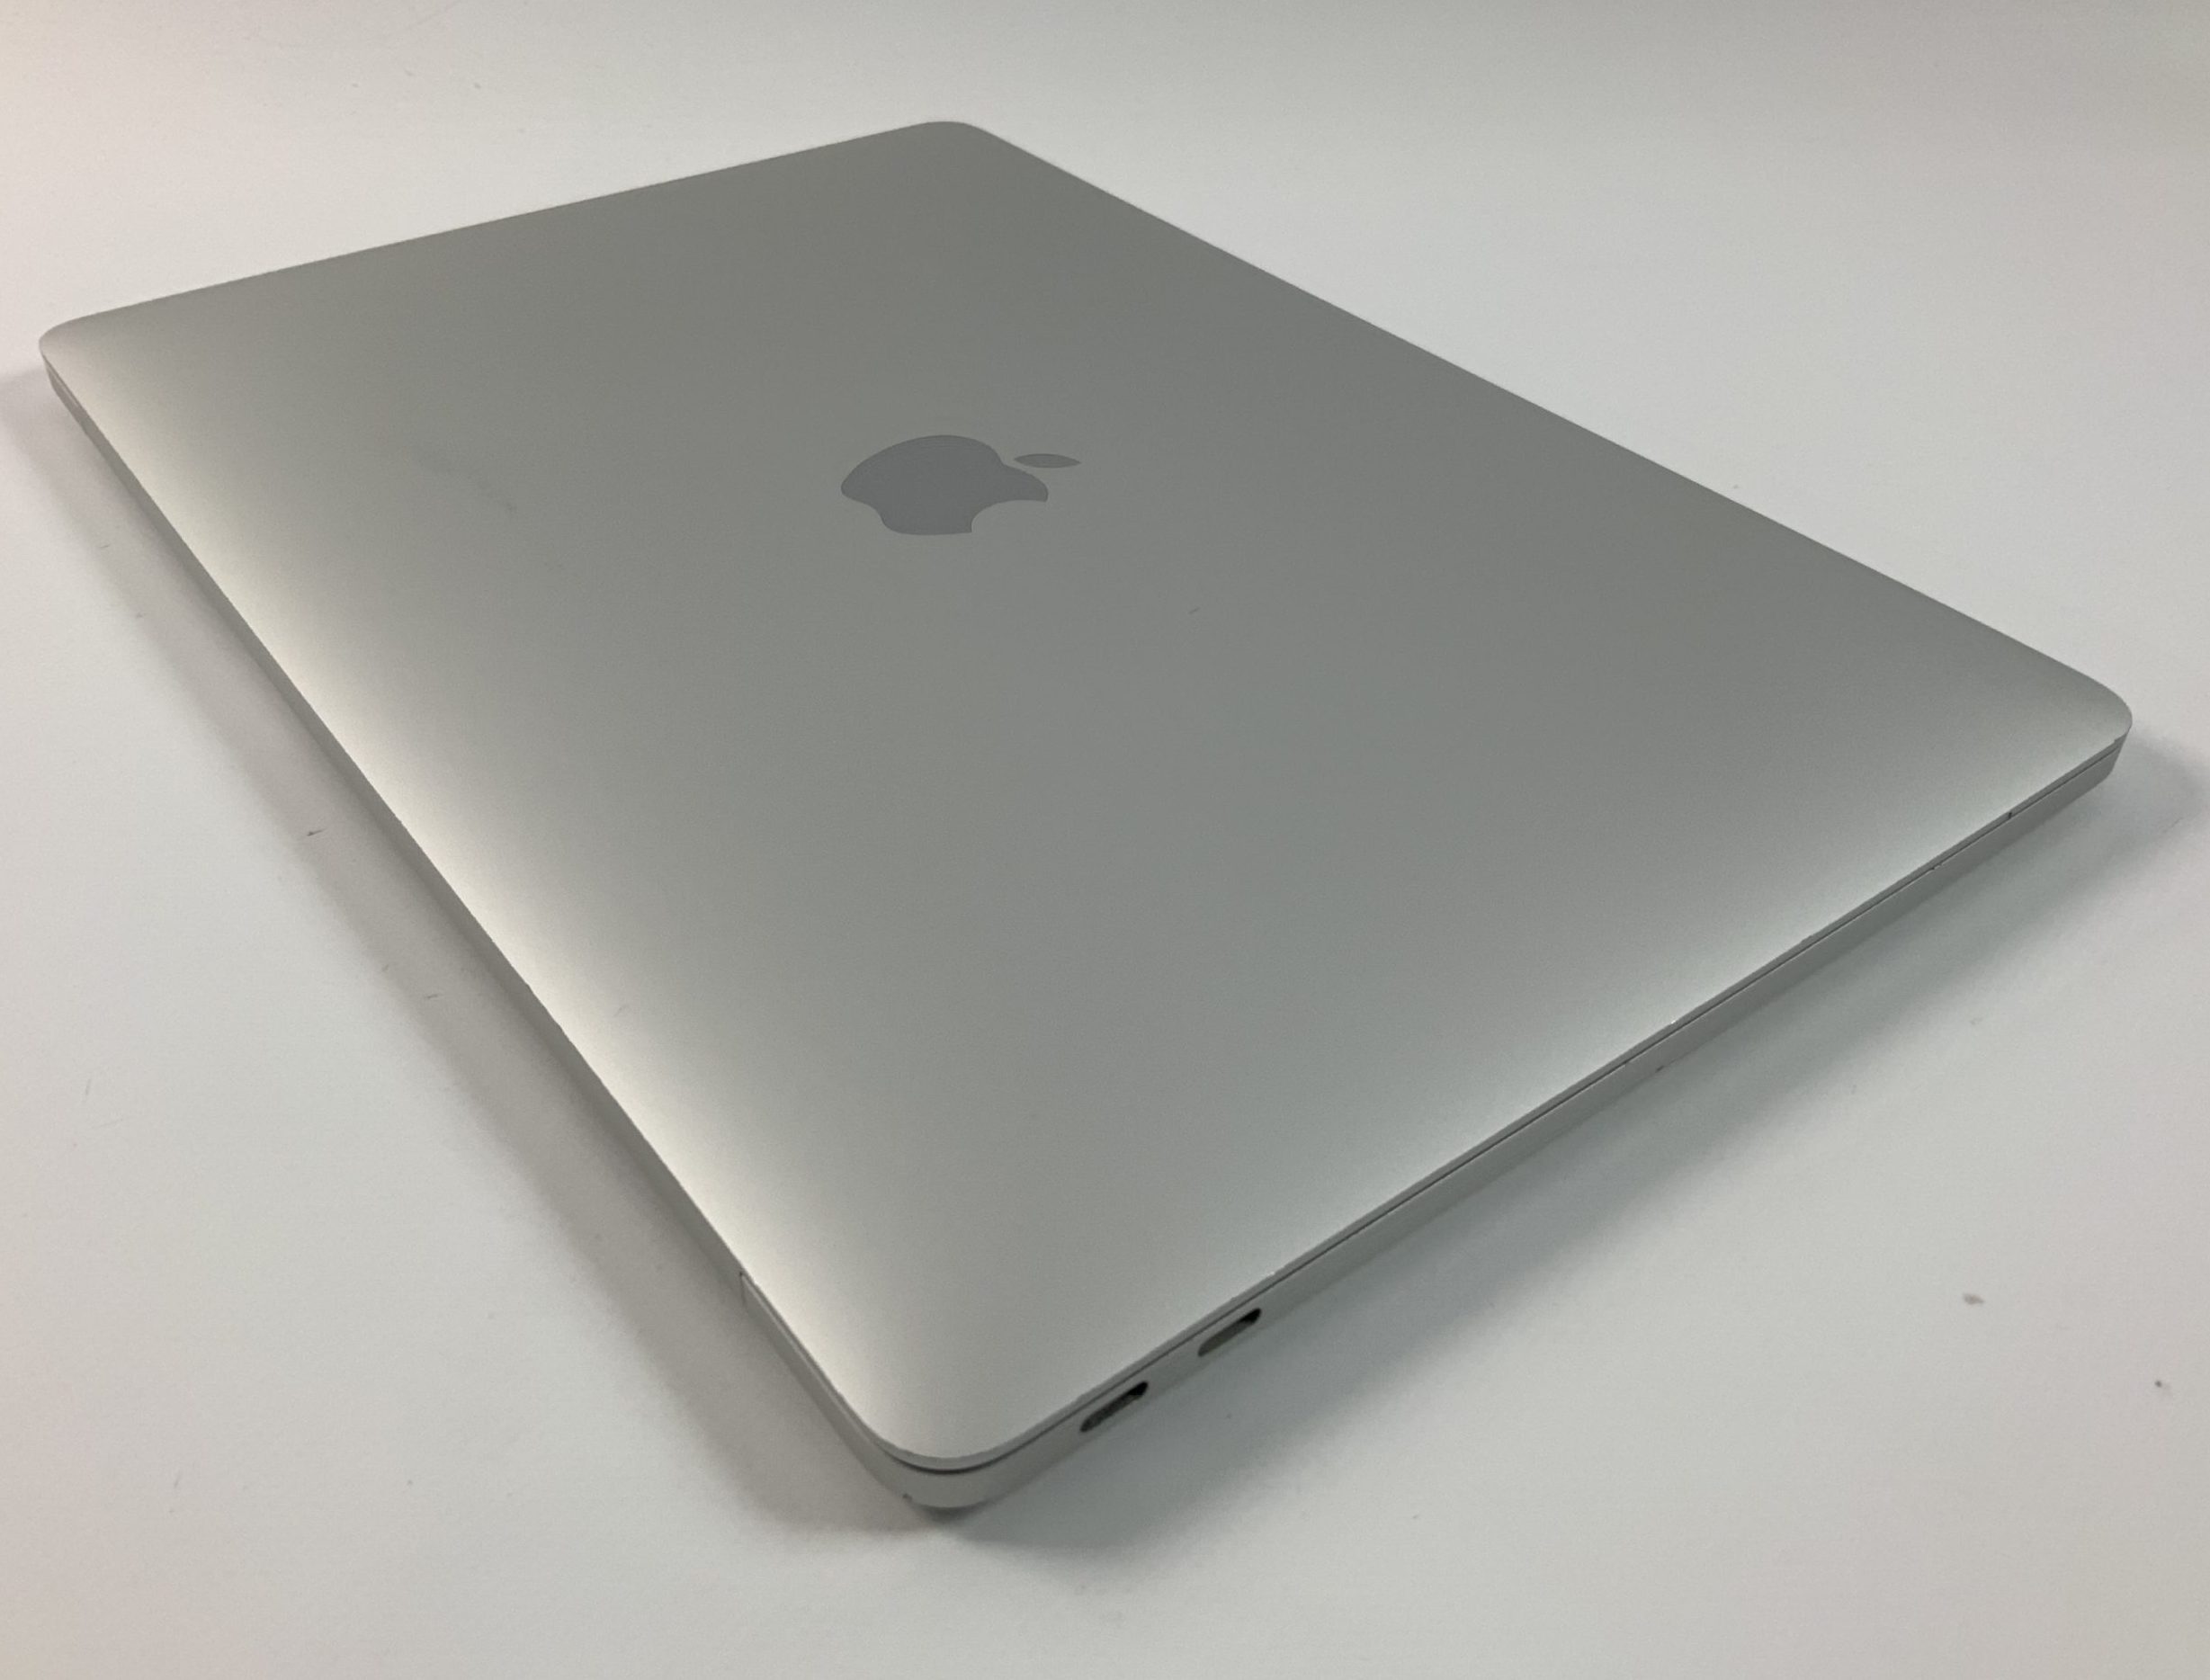 MacBook Pro 13" 2TBT Mid 2017 (Intel Core i5 2.3 GHz 8 GB RAM 256 GB SSD), Silver, Intel Core i5 2.3 GHz, 8 GB RAM, 256 GB SSD, bild 3